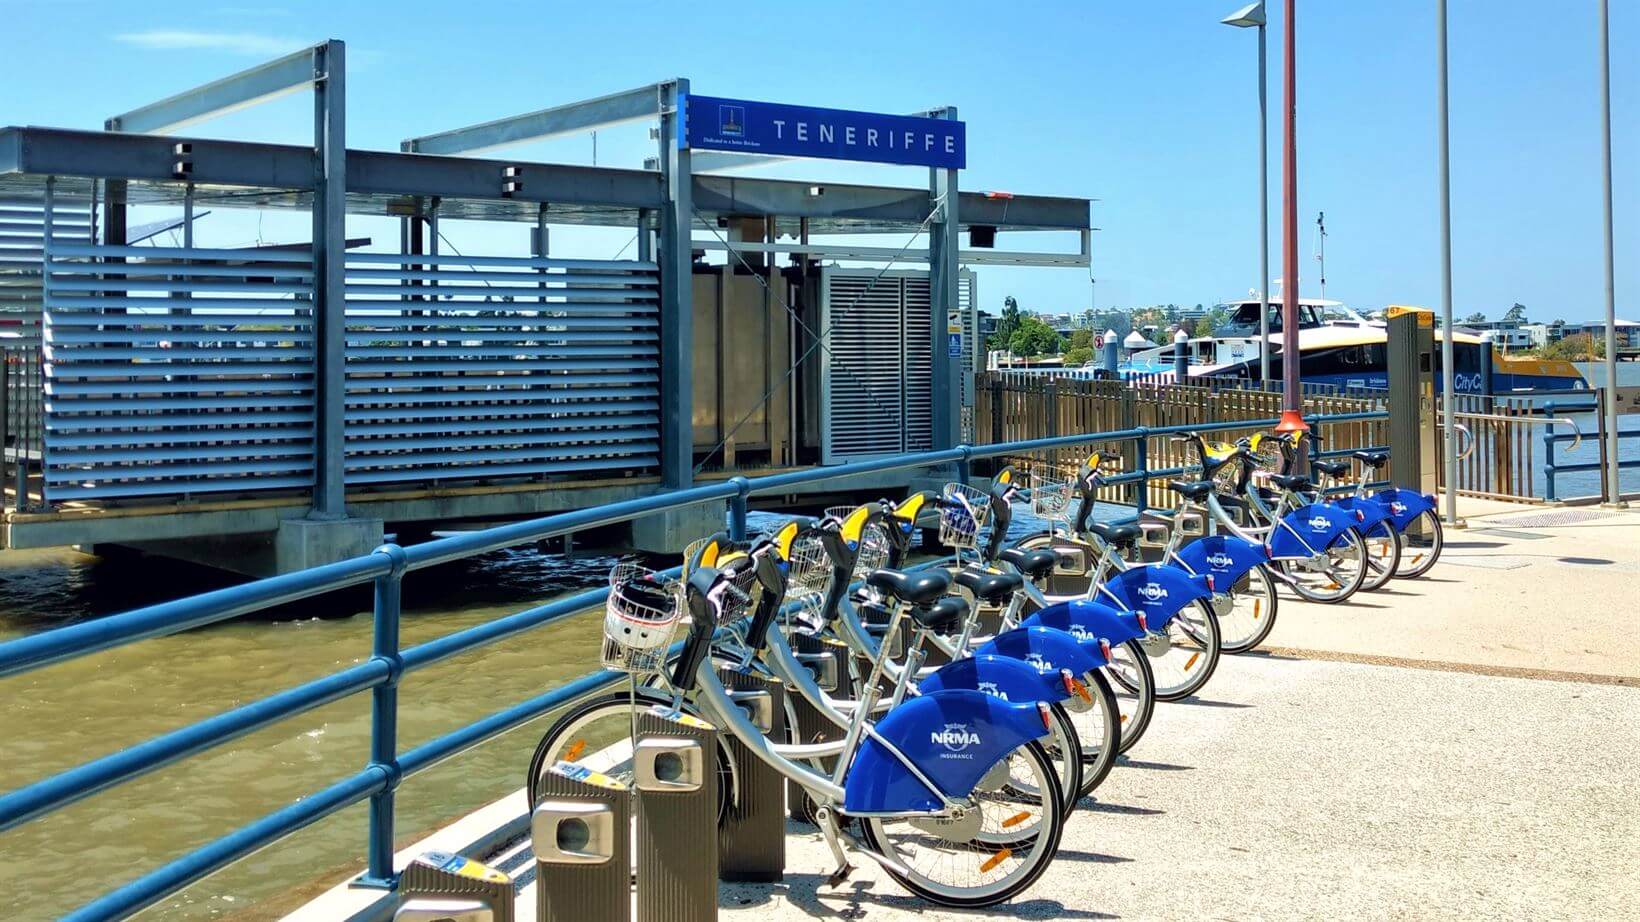 Bicicletas de uso compartilhado e ferry boat, dois ótimos meios de locomoção na cidade 